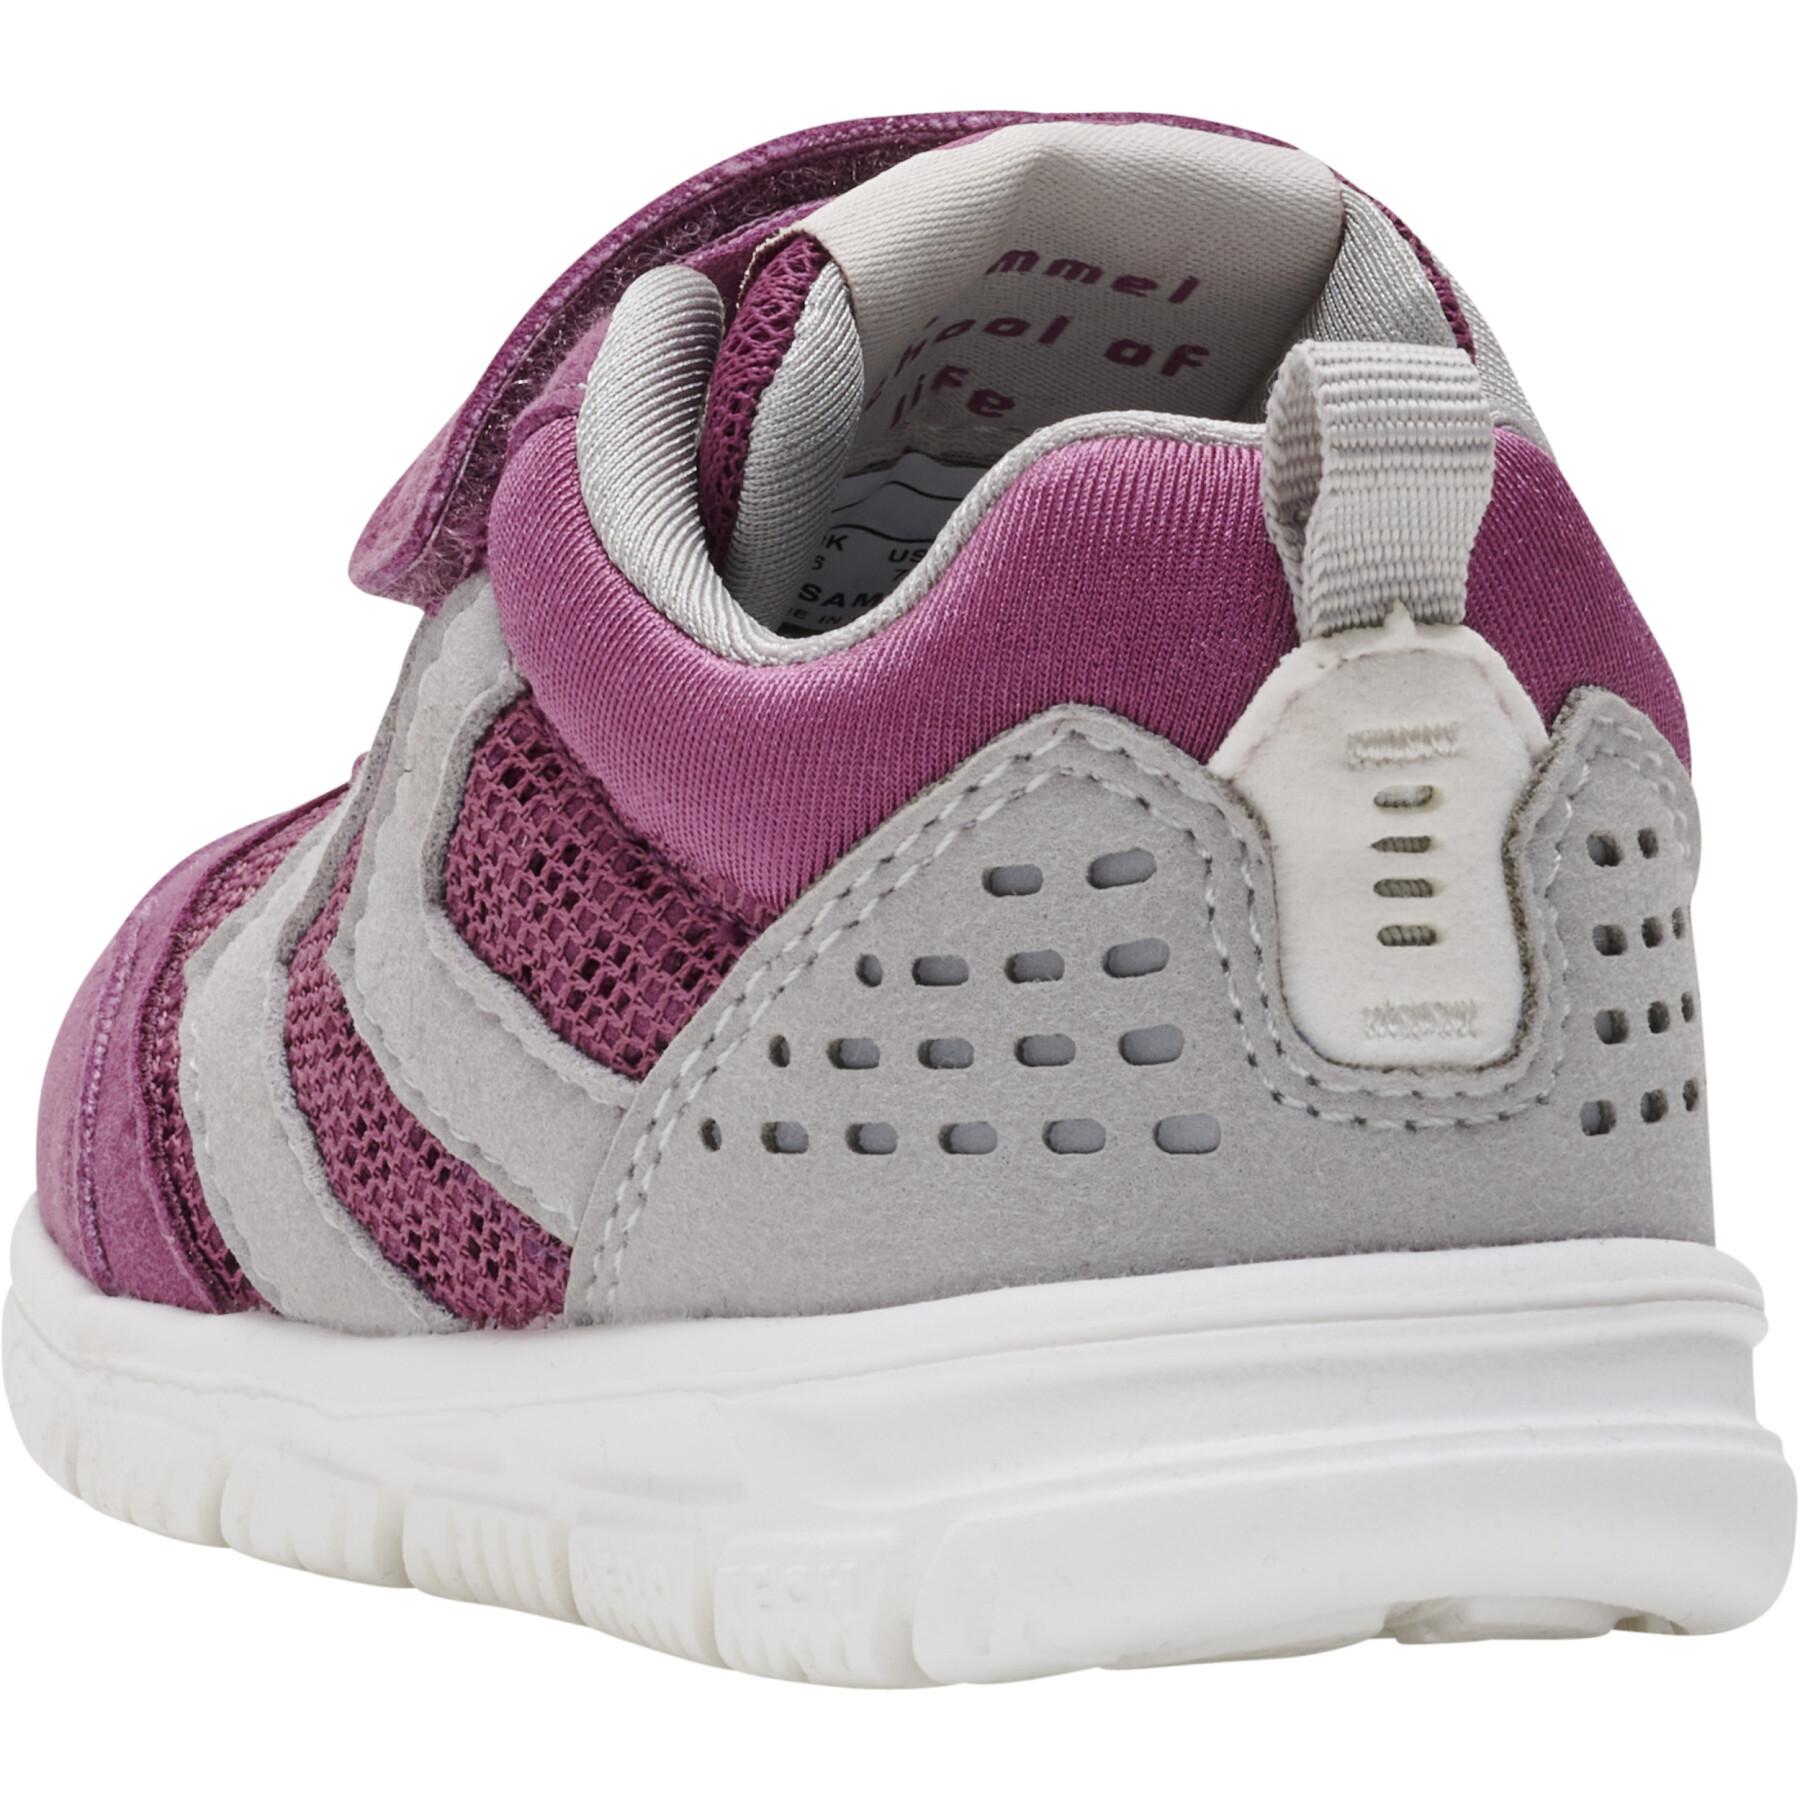 Baby girl sneakers Hummel Crosslite